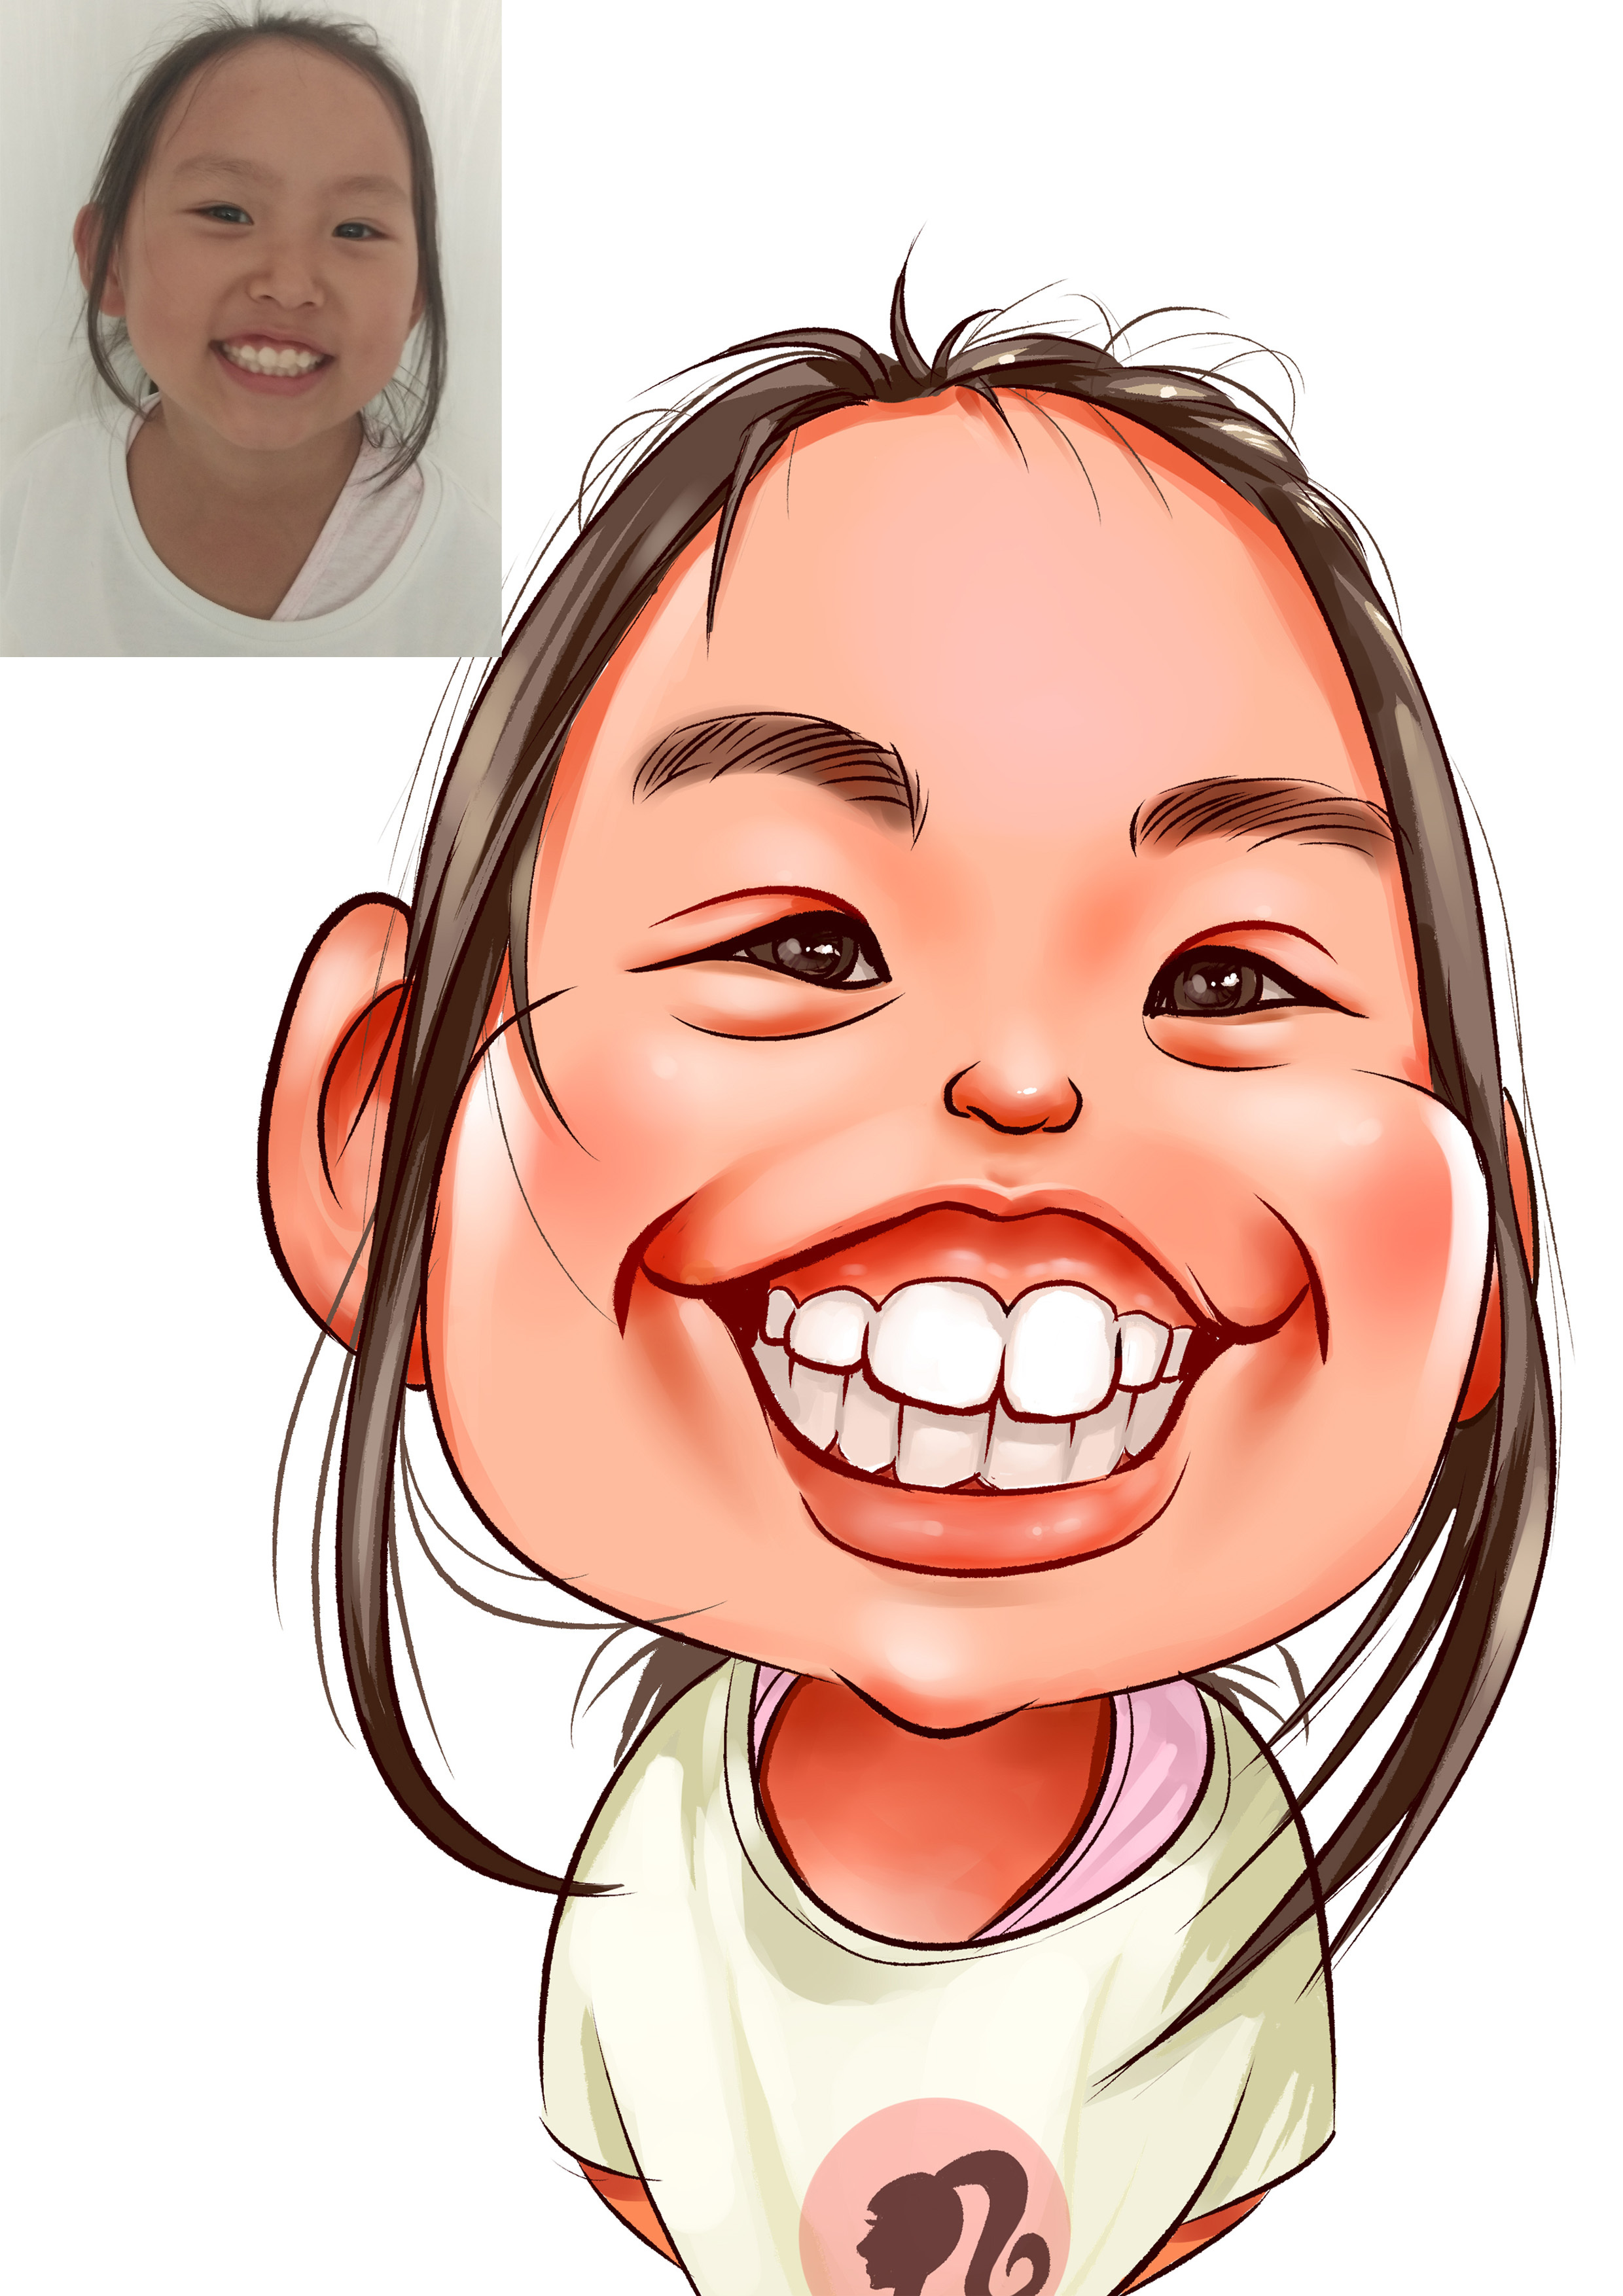 微笑的小女孩似颜绘夸张肖像漫画,你们觉得可爱么?